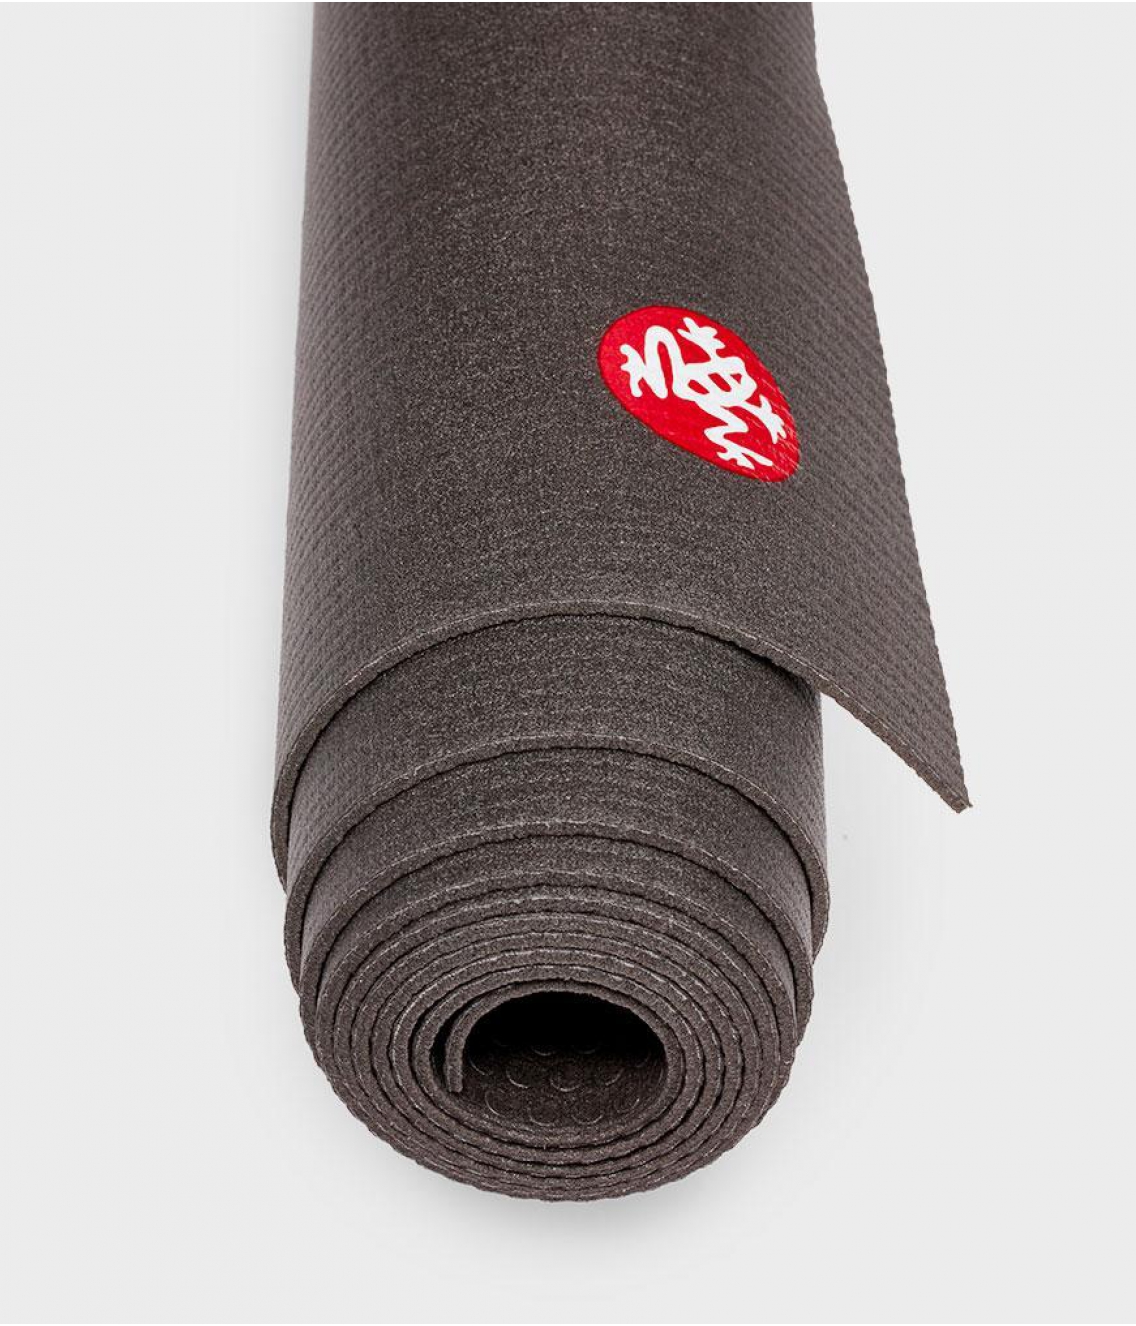 Профессиональный коврик для йоги из ПВХ Manduka PRO Travel 180*61*0,25 см - Black (Limited Edition)